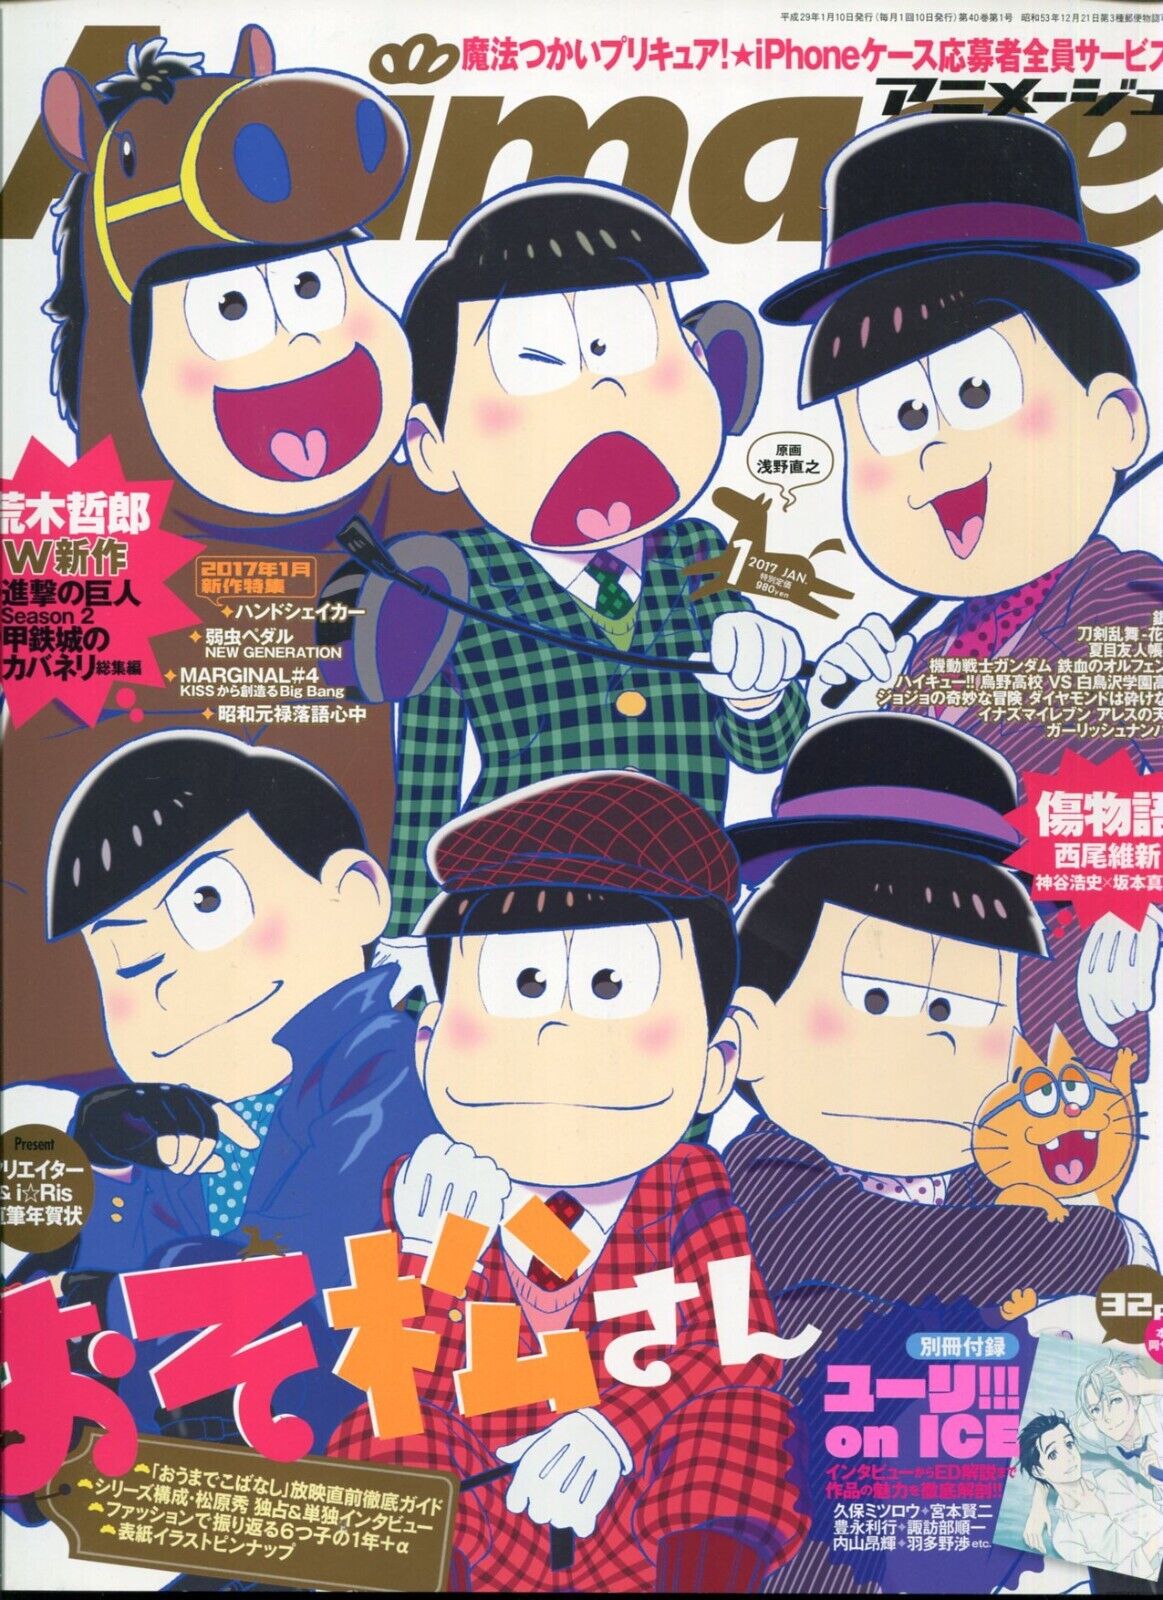 Animage animege 2017 Jan. Japanese Magazine Anime Animation Manga 240608